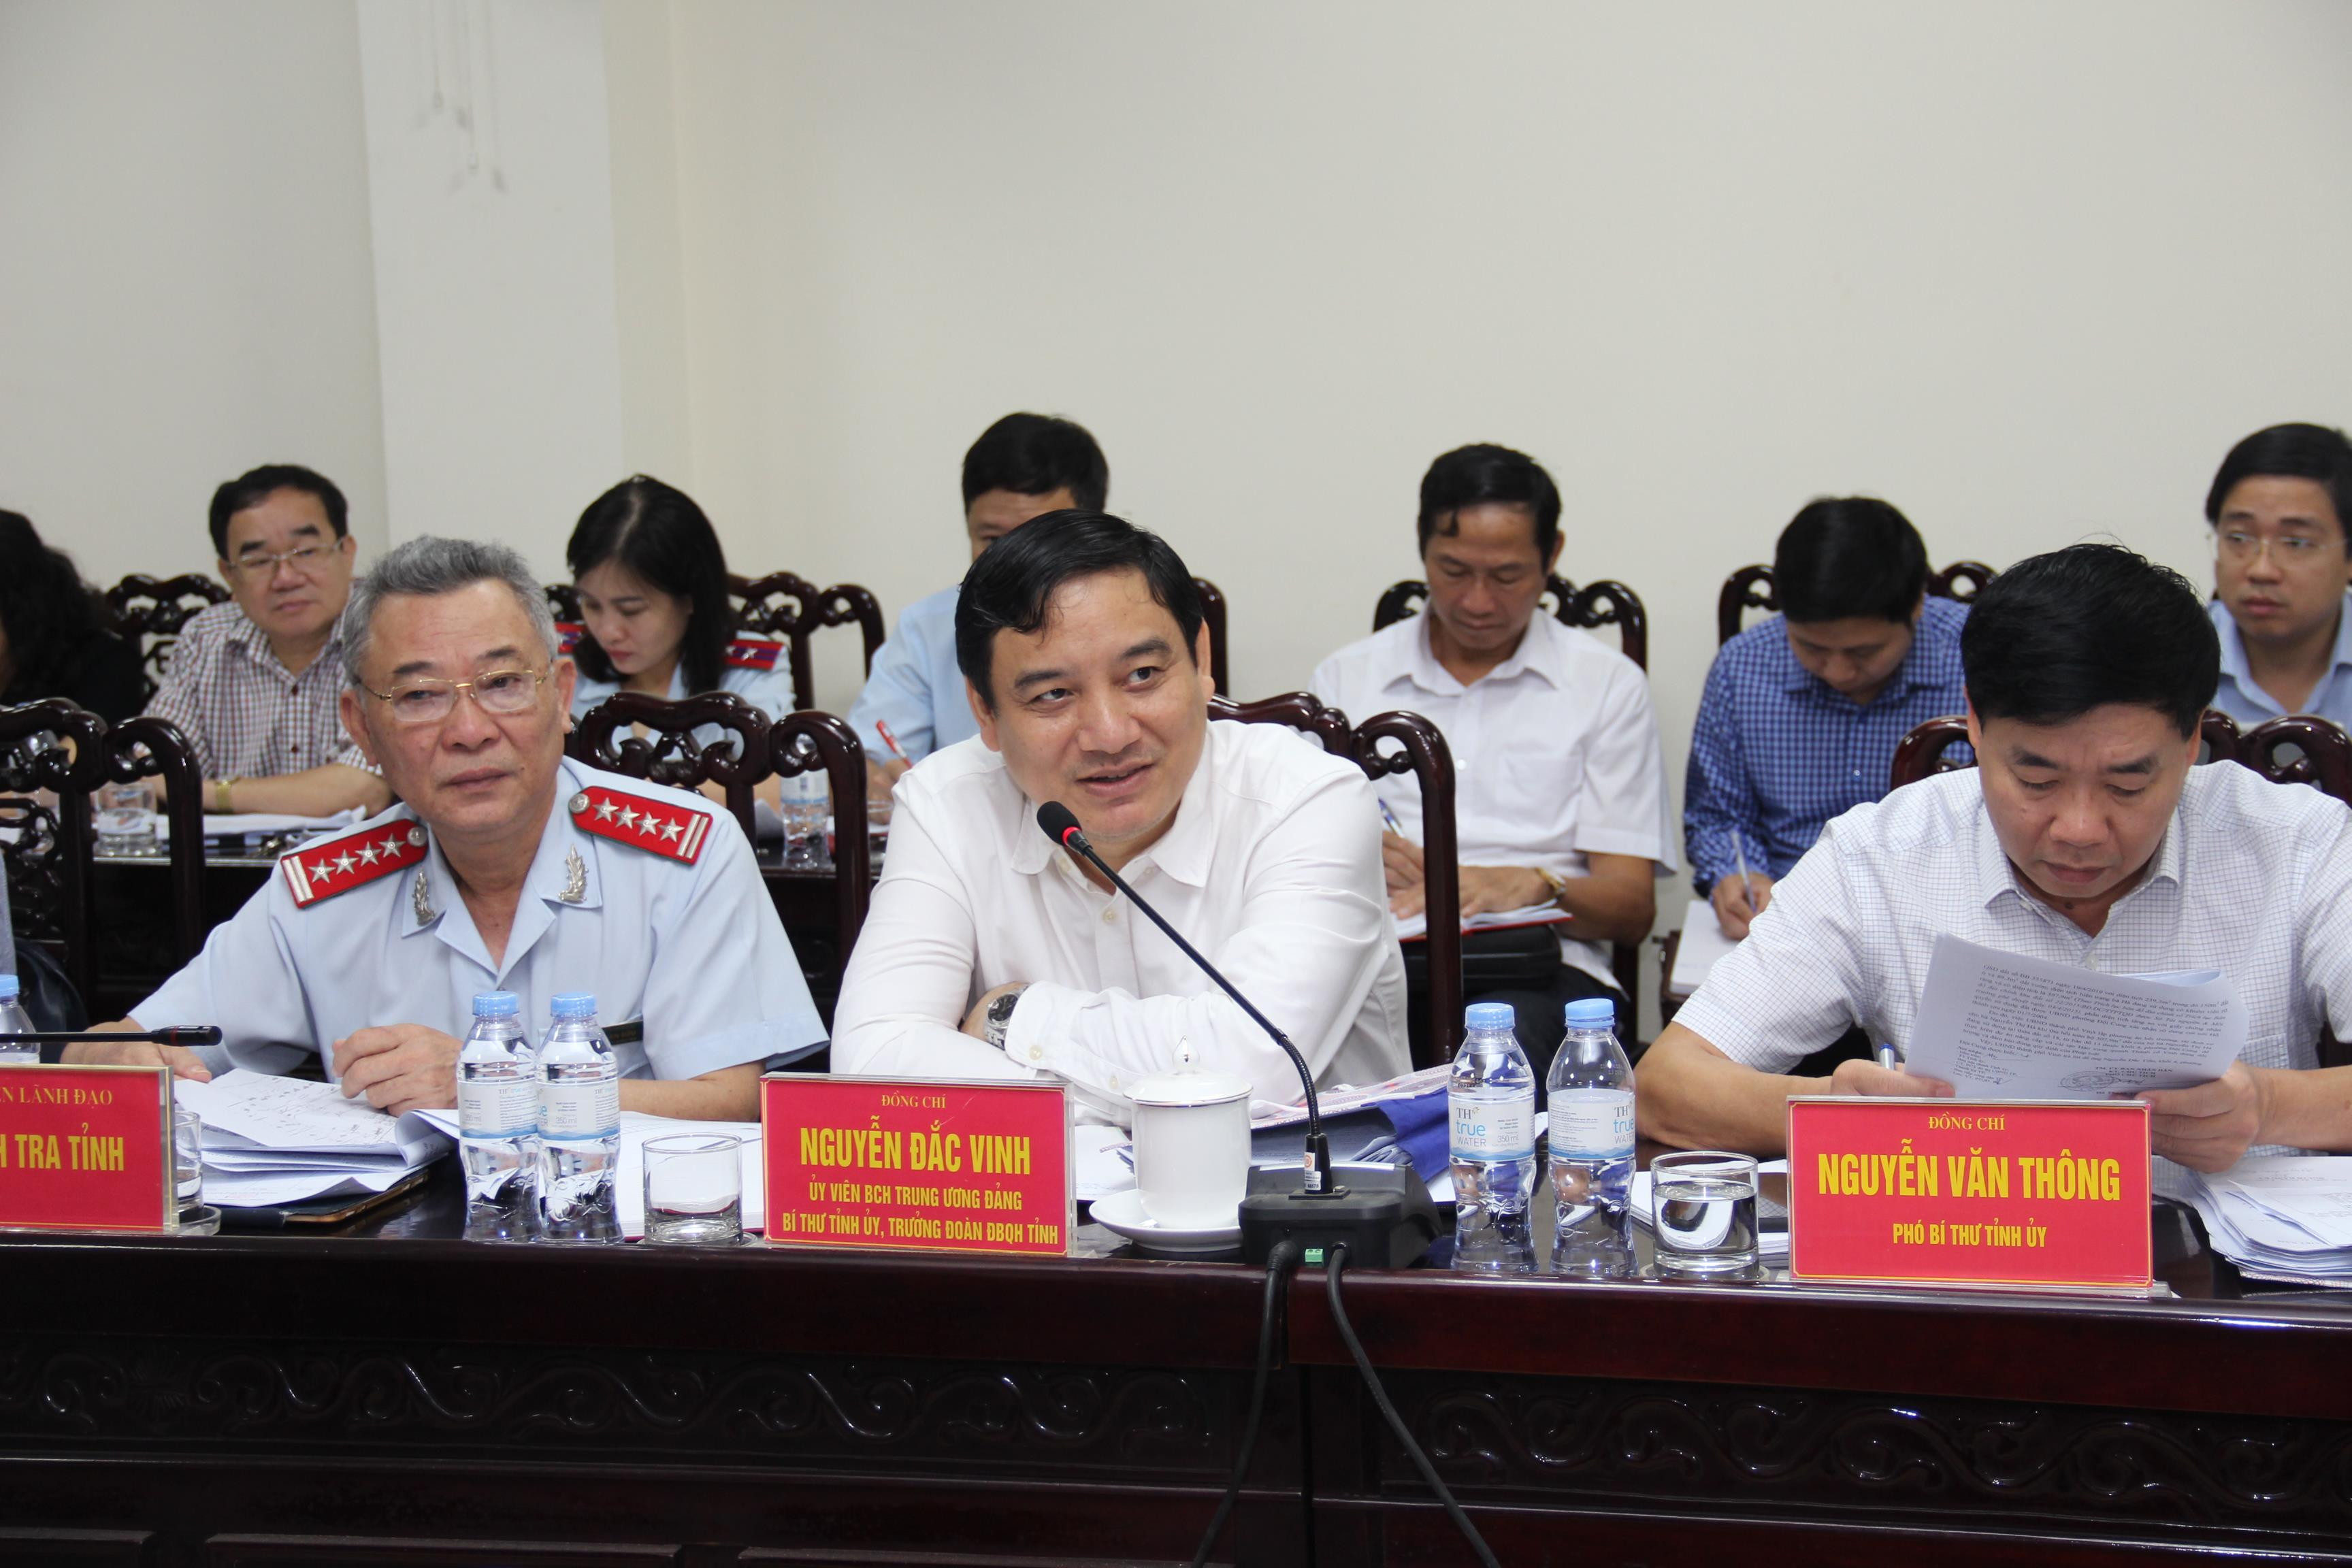 Bí thư Tỉnh ủy Nguyễn Đắc Vinh lắng nghe các ý kiến của người dân tại phiên tiếp công dân tháng 9.2019. Ảnh: Hoài Thu